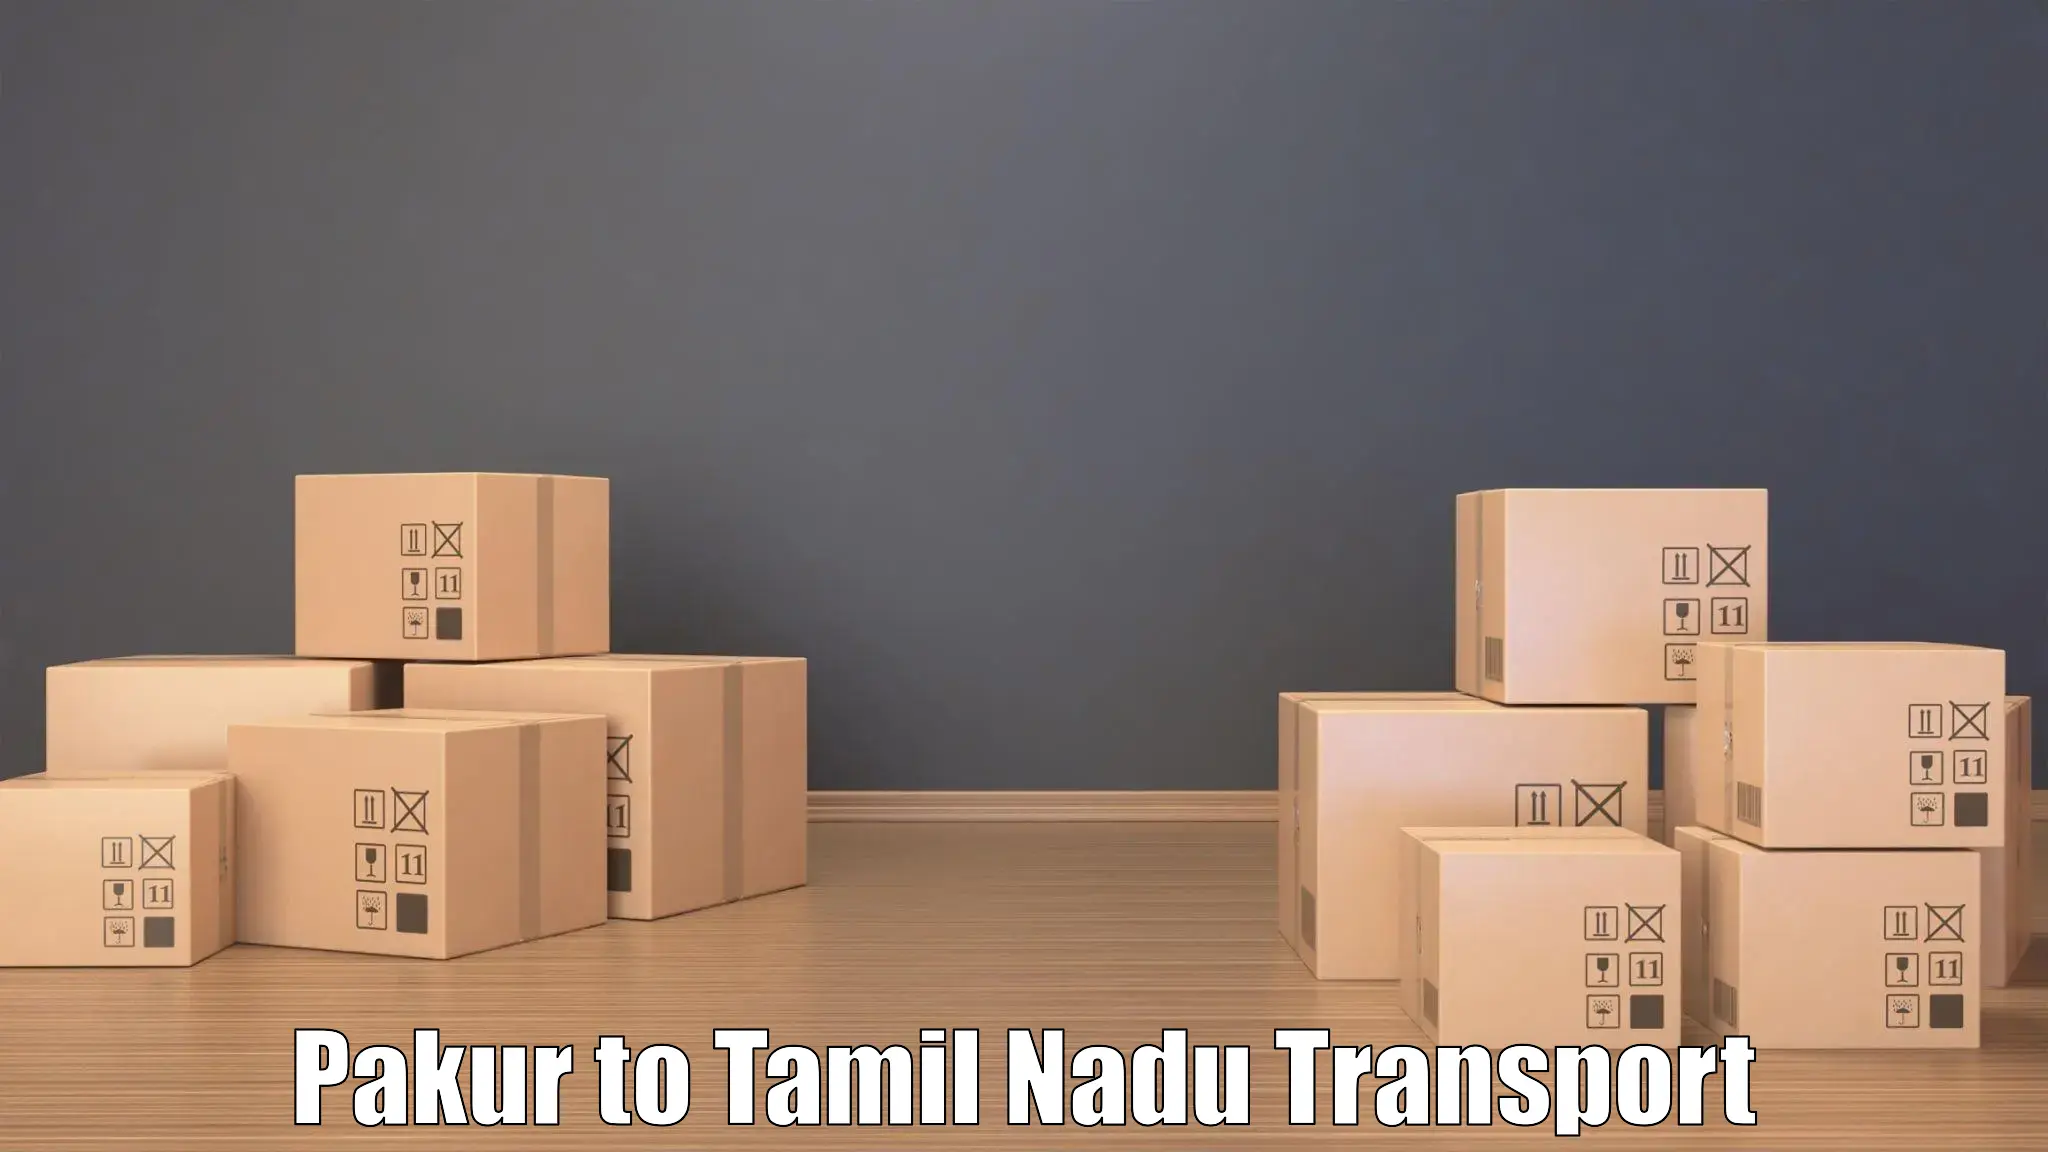 Goods transport services Pakur to IIIT Tiruchirappalli